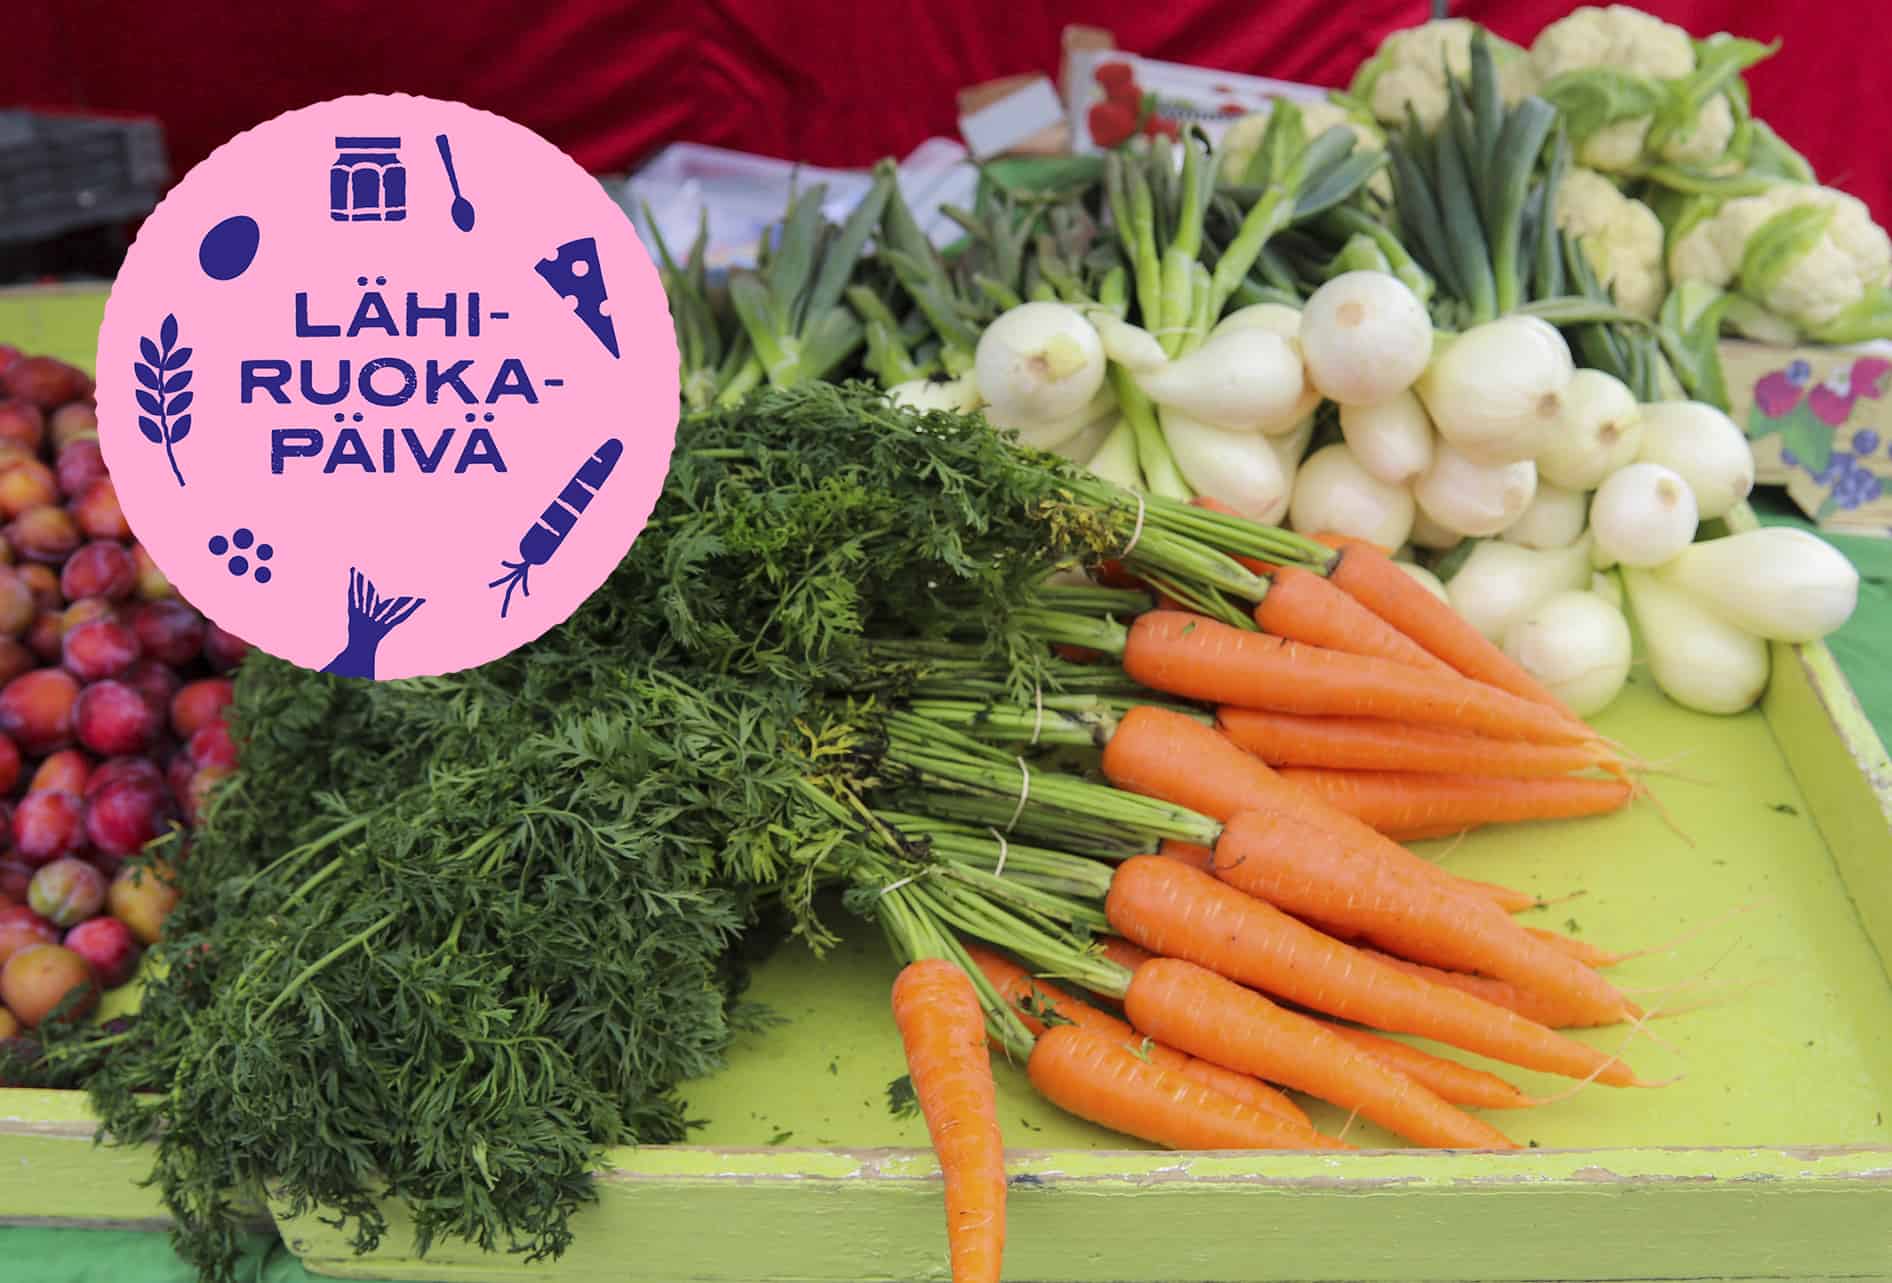 Porkkanoita ja sipuleja esillä. Lähiruokapäivän-logo vasemmassa yläkulmassa.